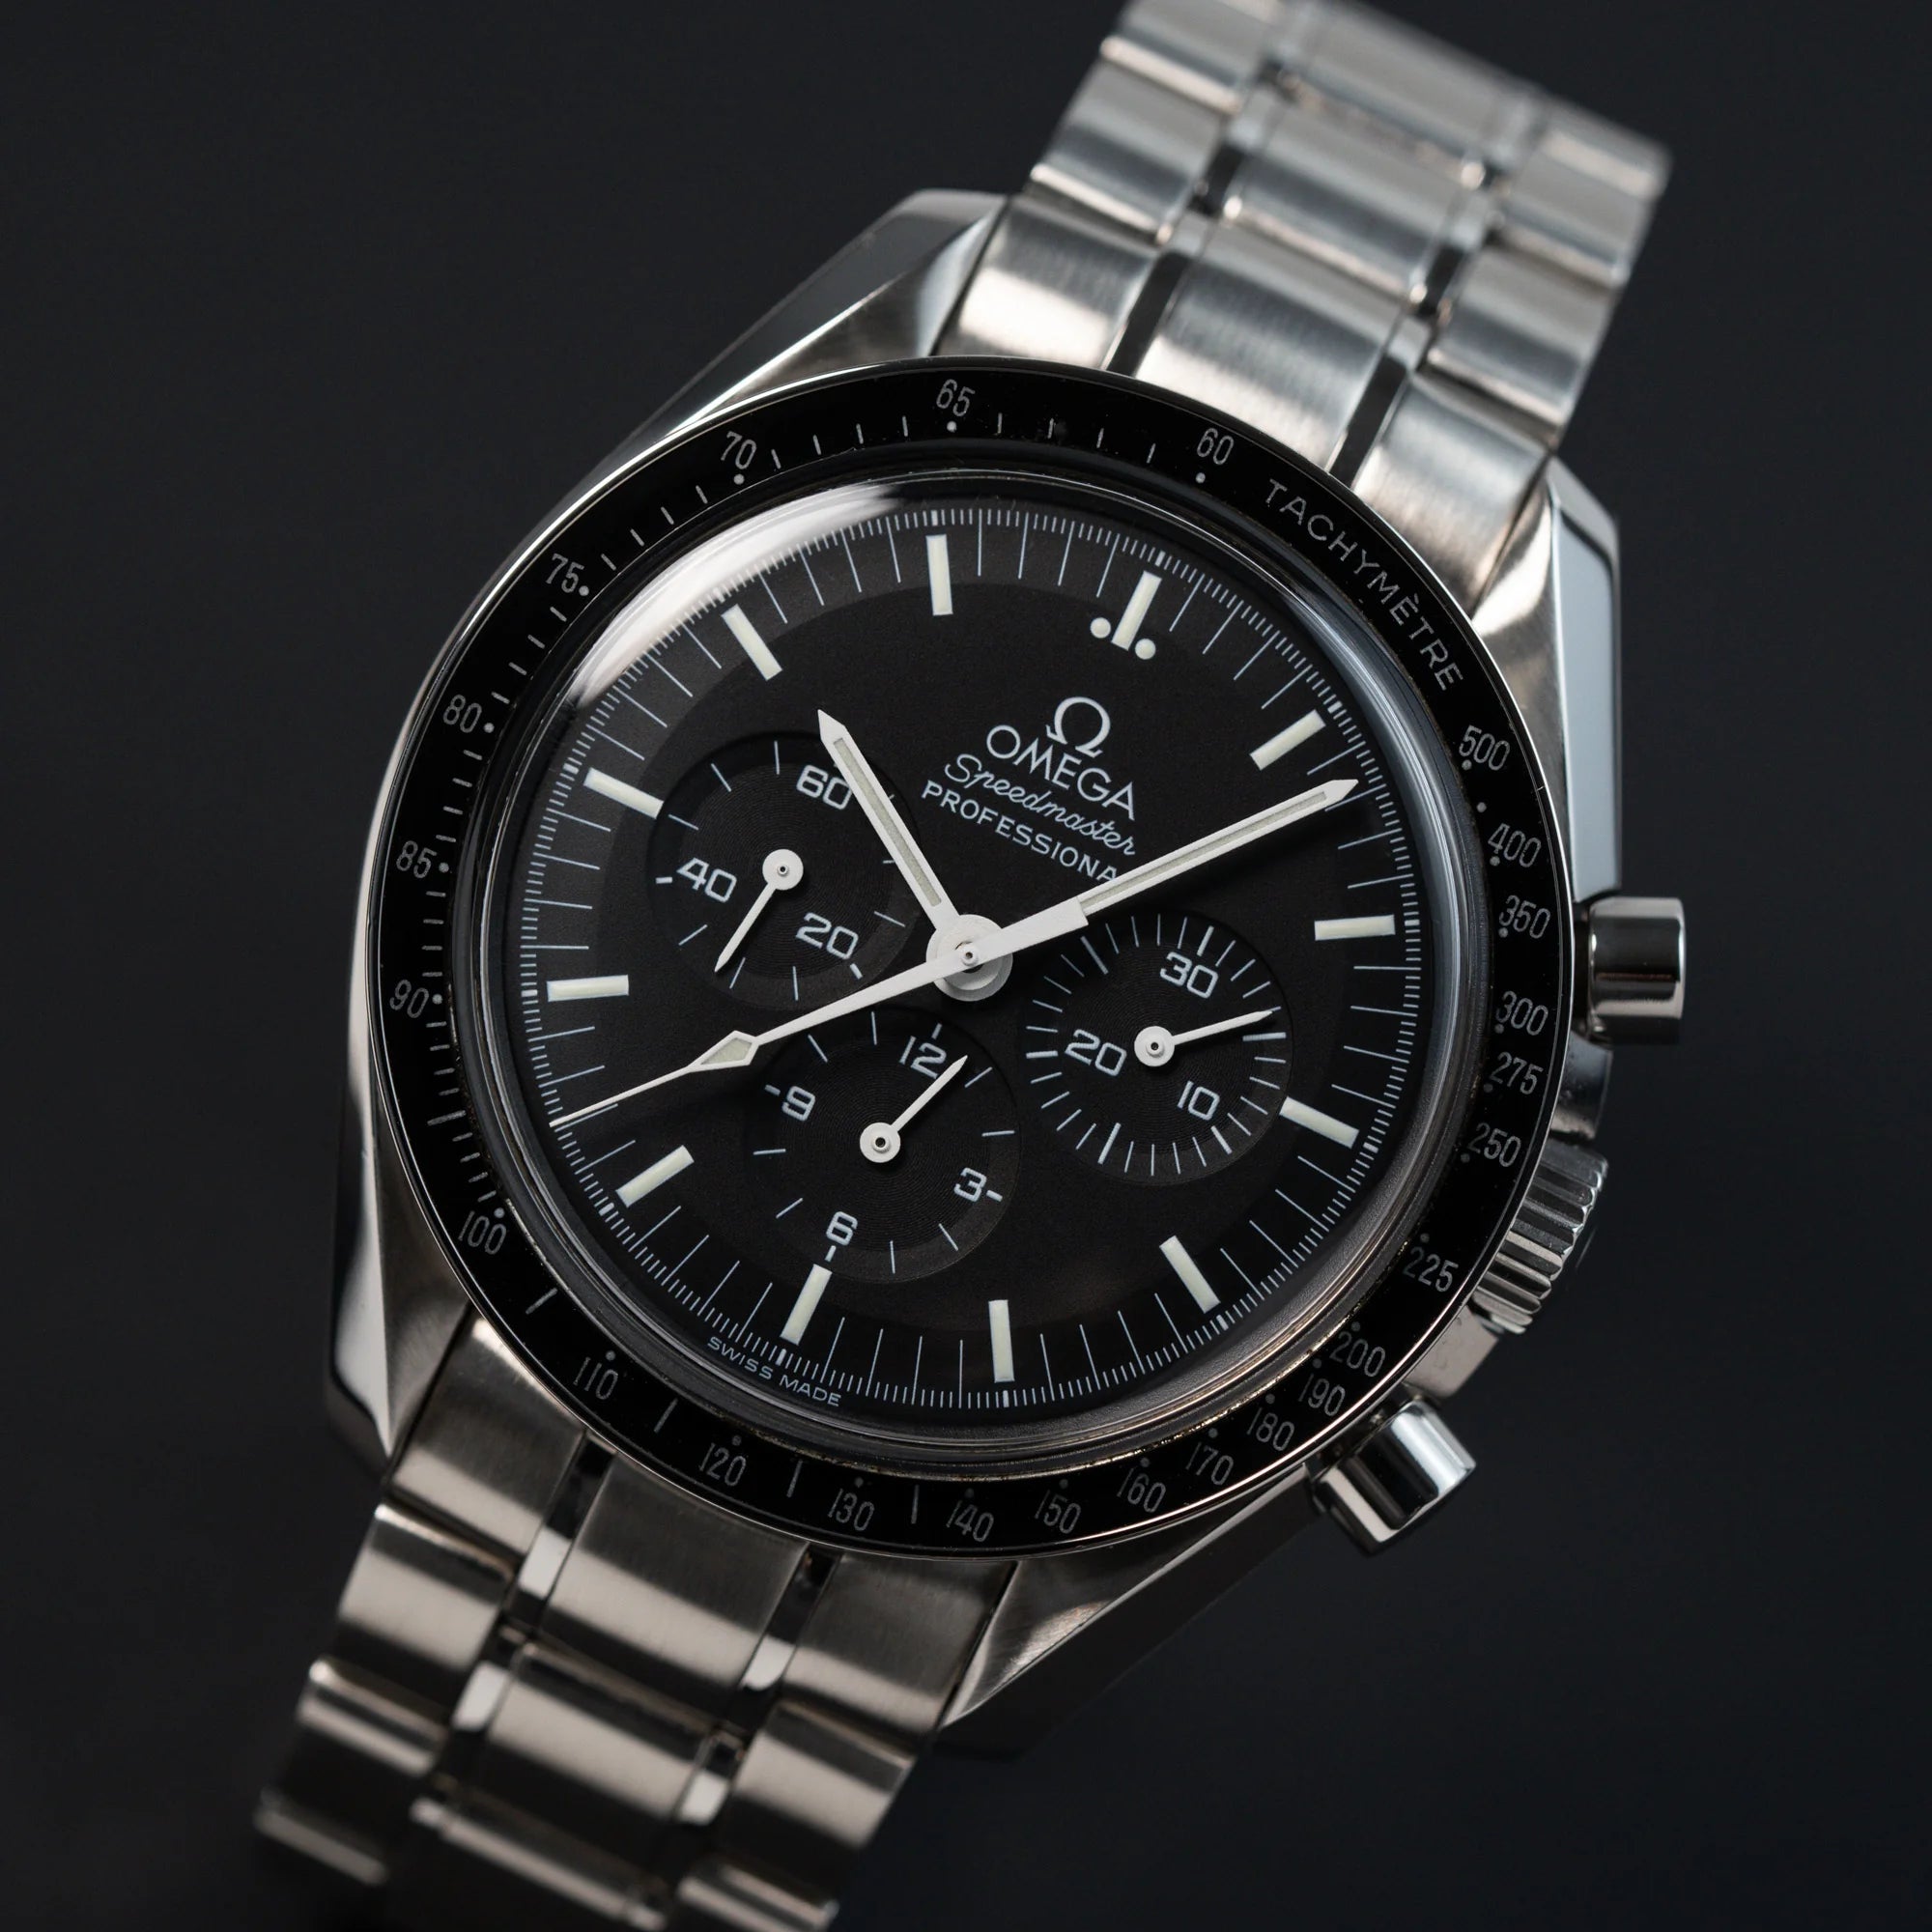 Detailreiche Aufnahme der Omega Speedmaster Moonwatch Professional mit der Referenz 357.50.00 mit dem klassischen schwarzen Zifferblatt